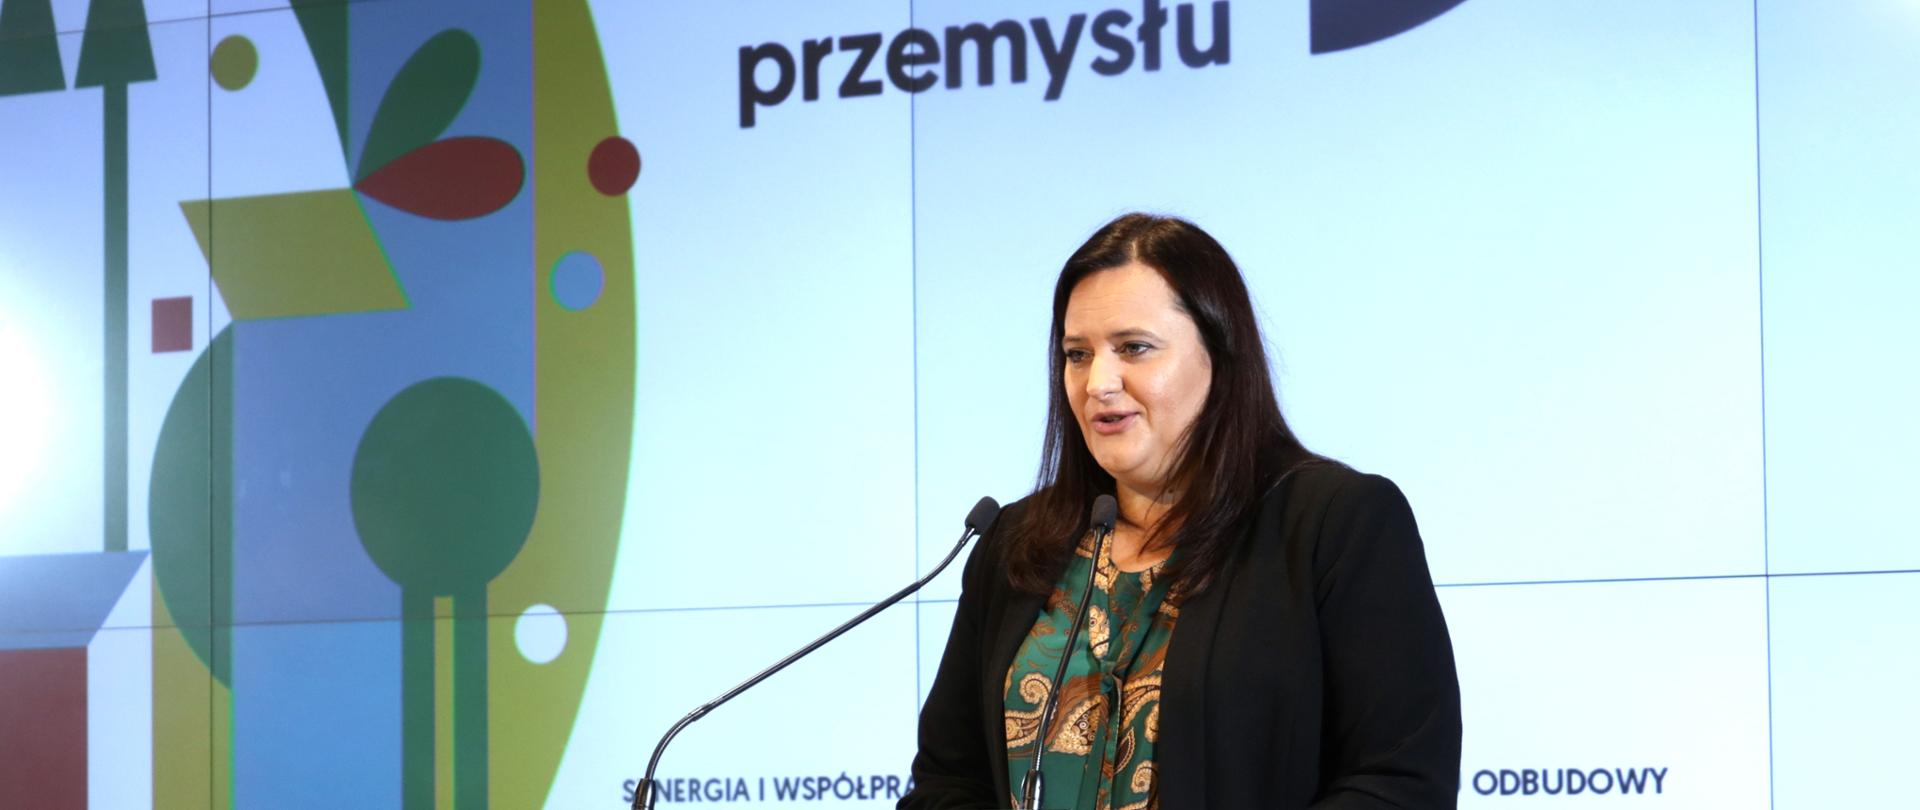 wiceminister Małgorzata Jarosińska-Jedynak mówi do mikrofonu, za nią częściowo widoczny napis Miesiąc Liderów Przemysłu